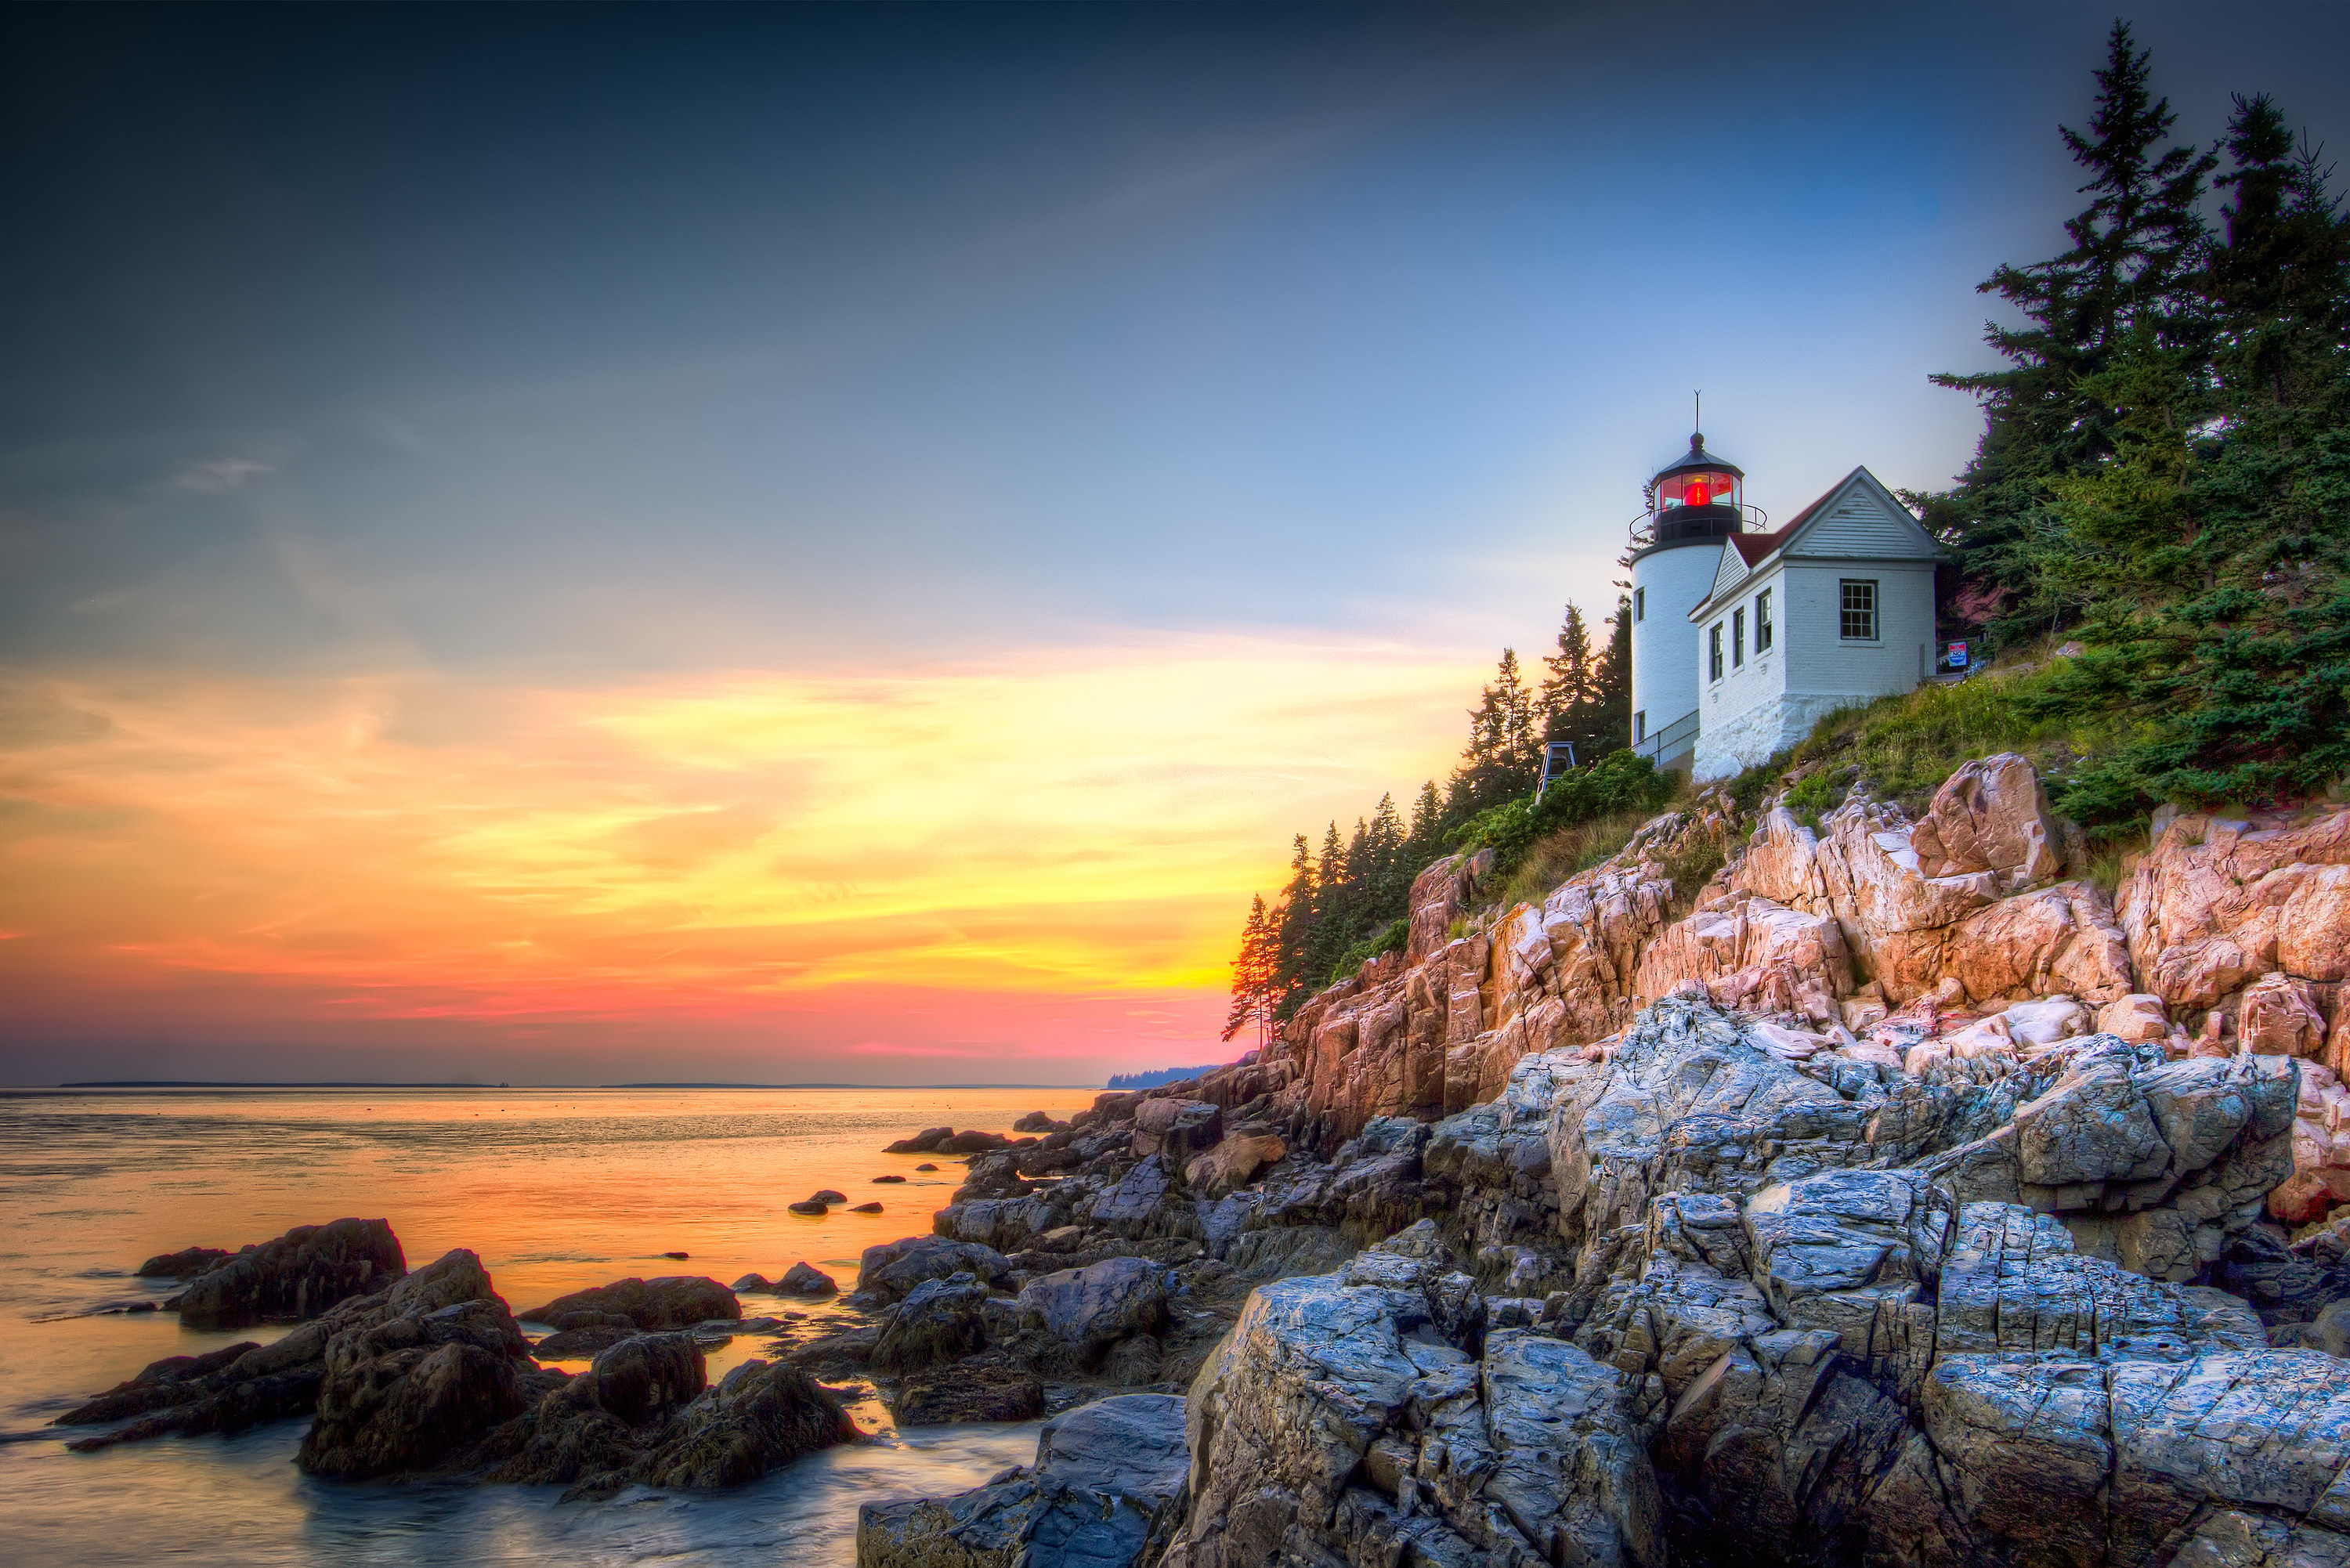 Lighthouse on a rocky coast